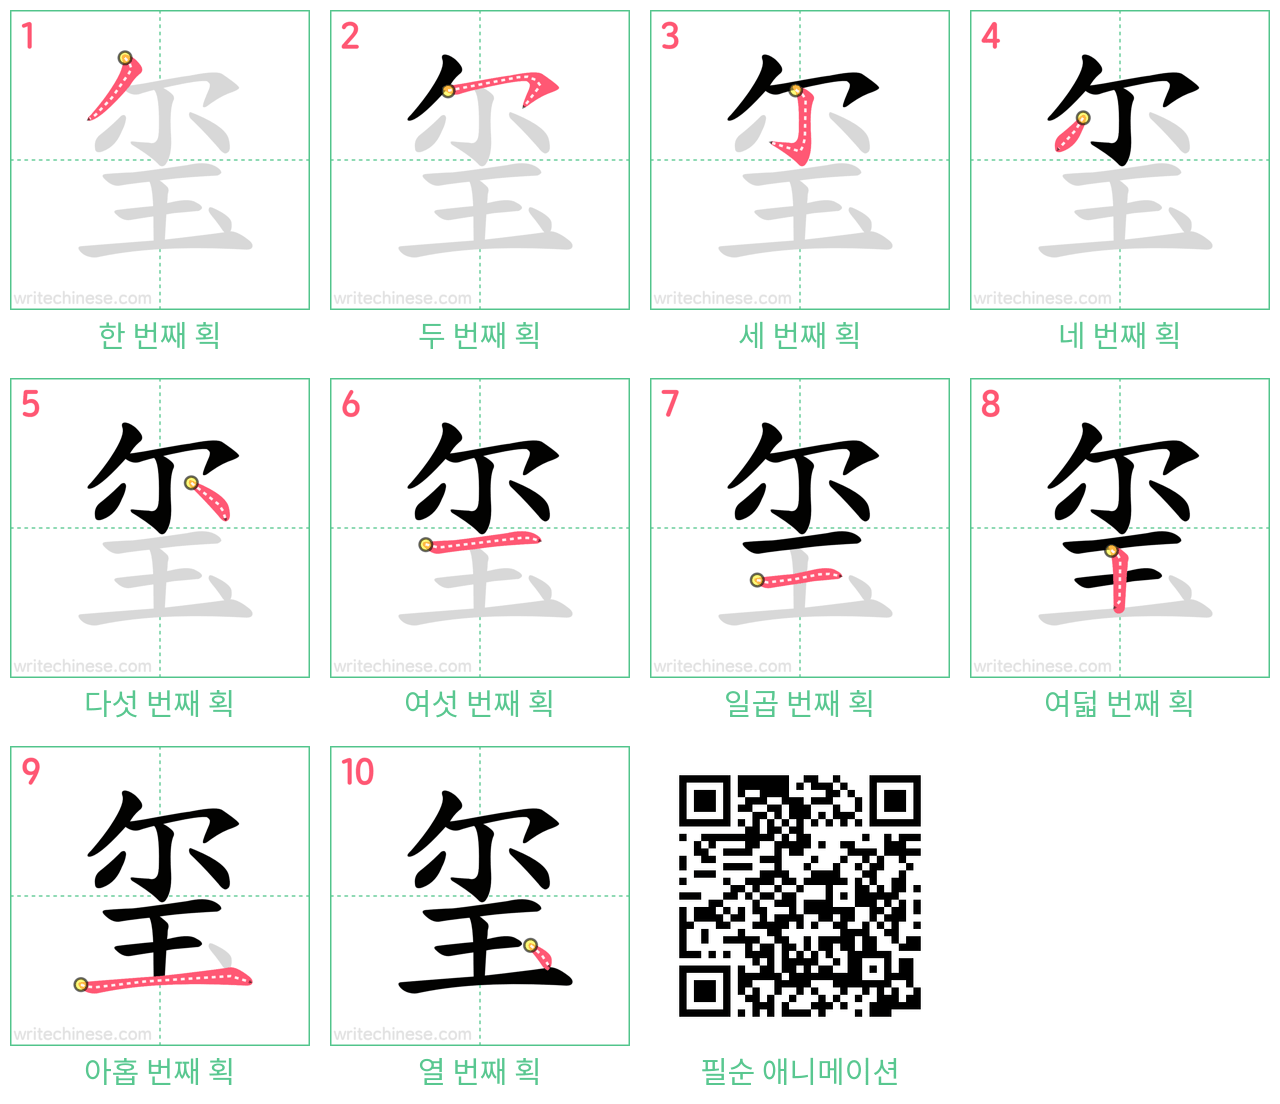 玺 step-by-step stroke order diagrams